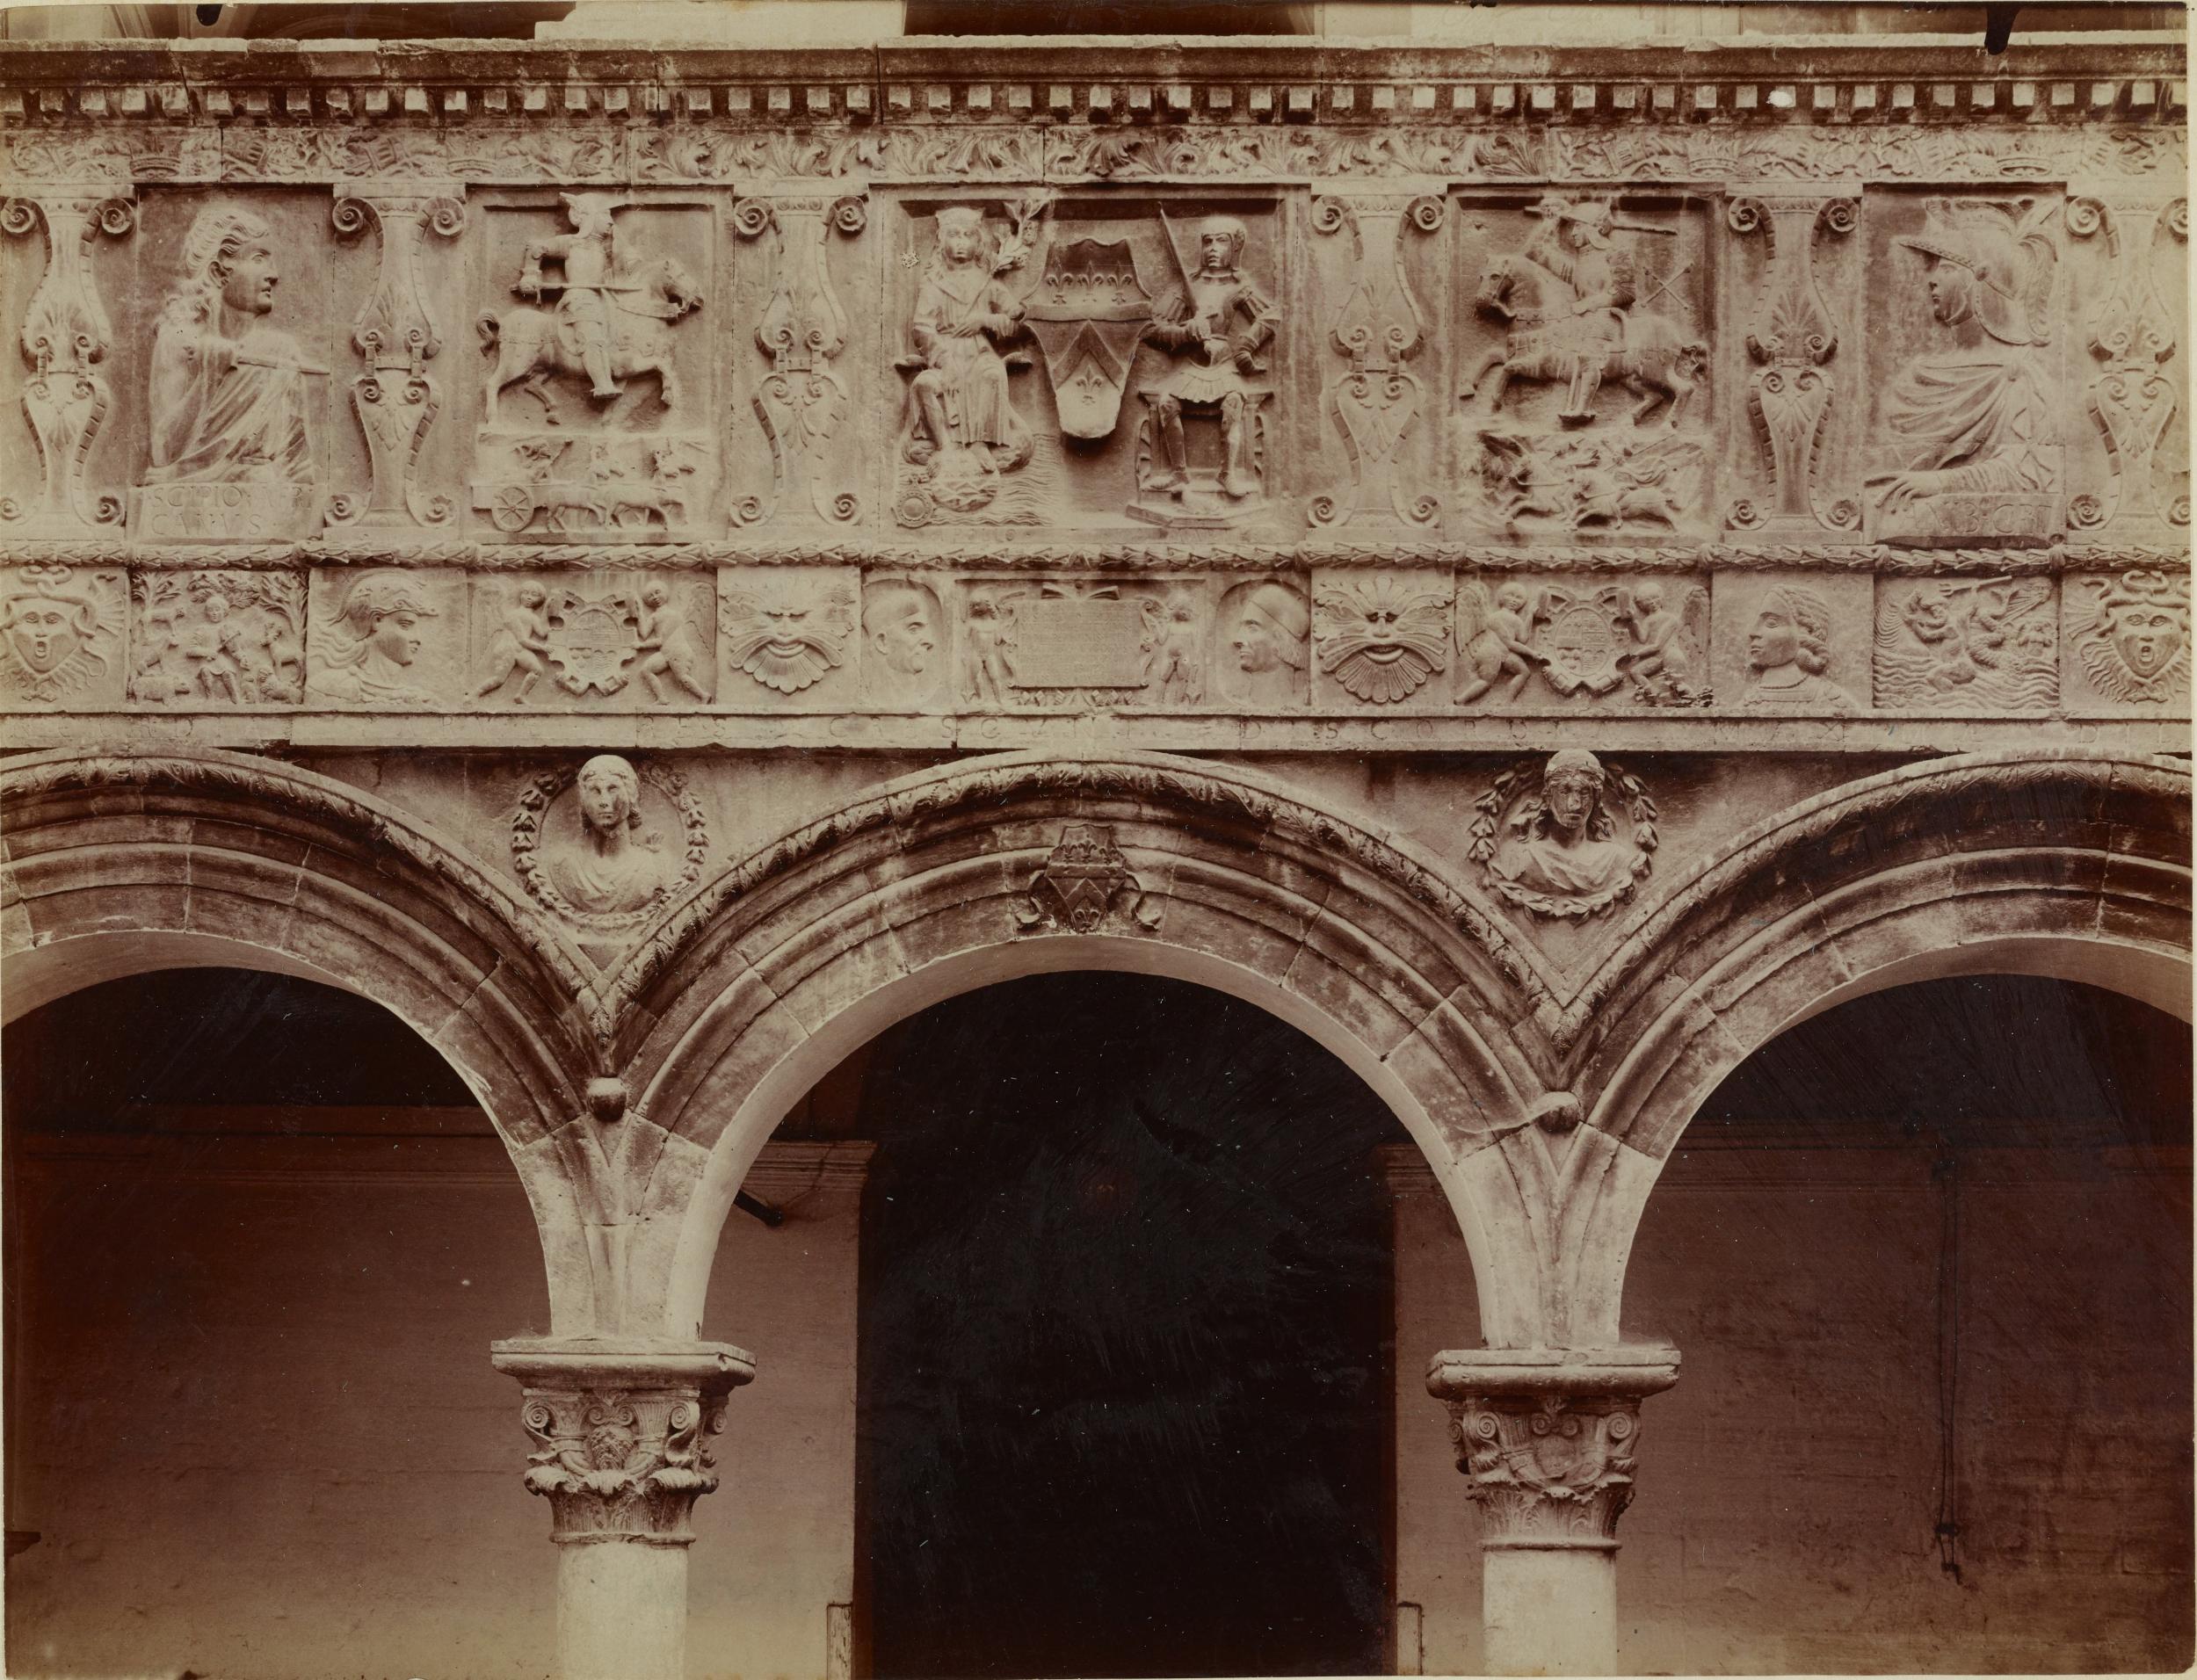 Fotografo non identificato, Bitonto - Palazzo Sylos-Labini, cortile, loggia a colonne con bassorilievi, 1891-1910, albumina/carta, MPI137916